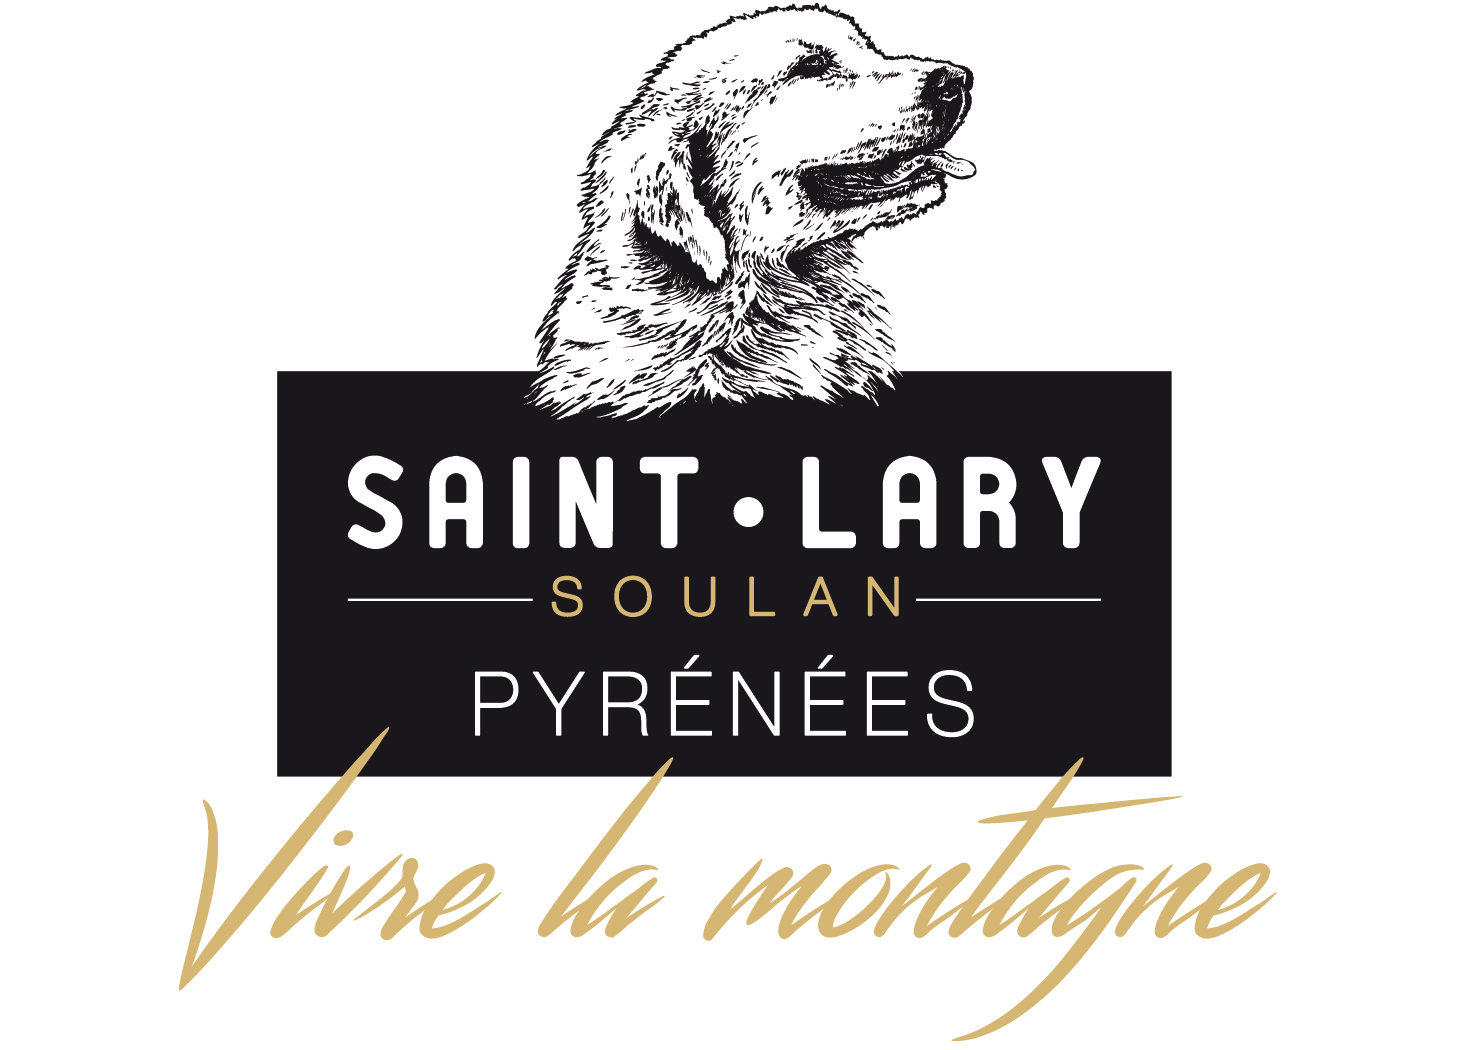 Ski resort Saint Lary Soulan